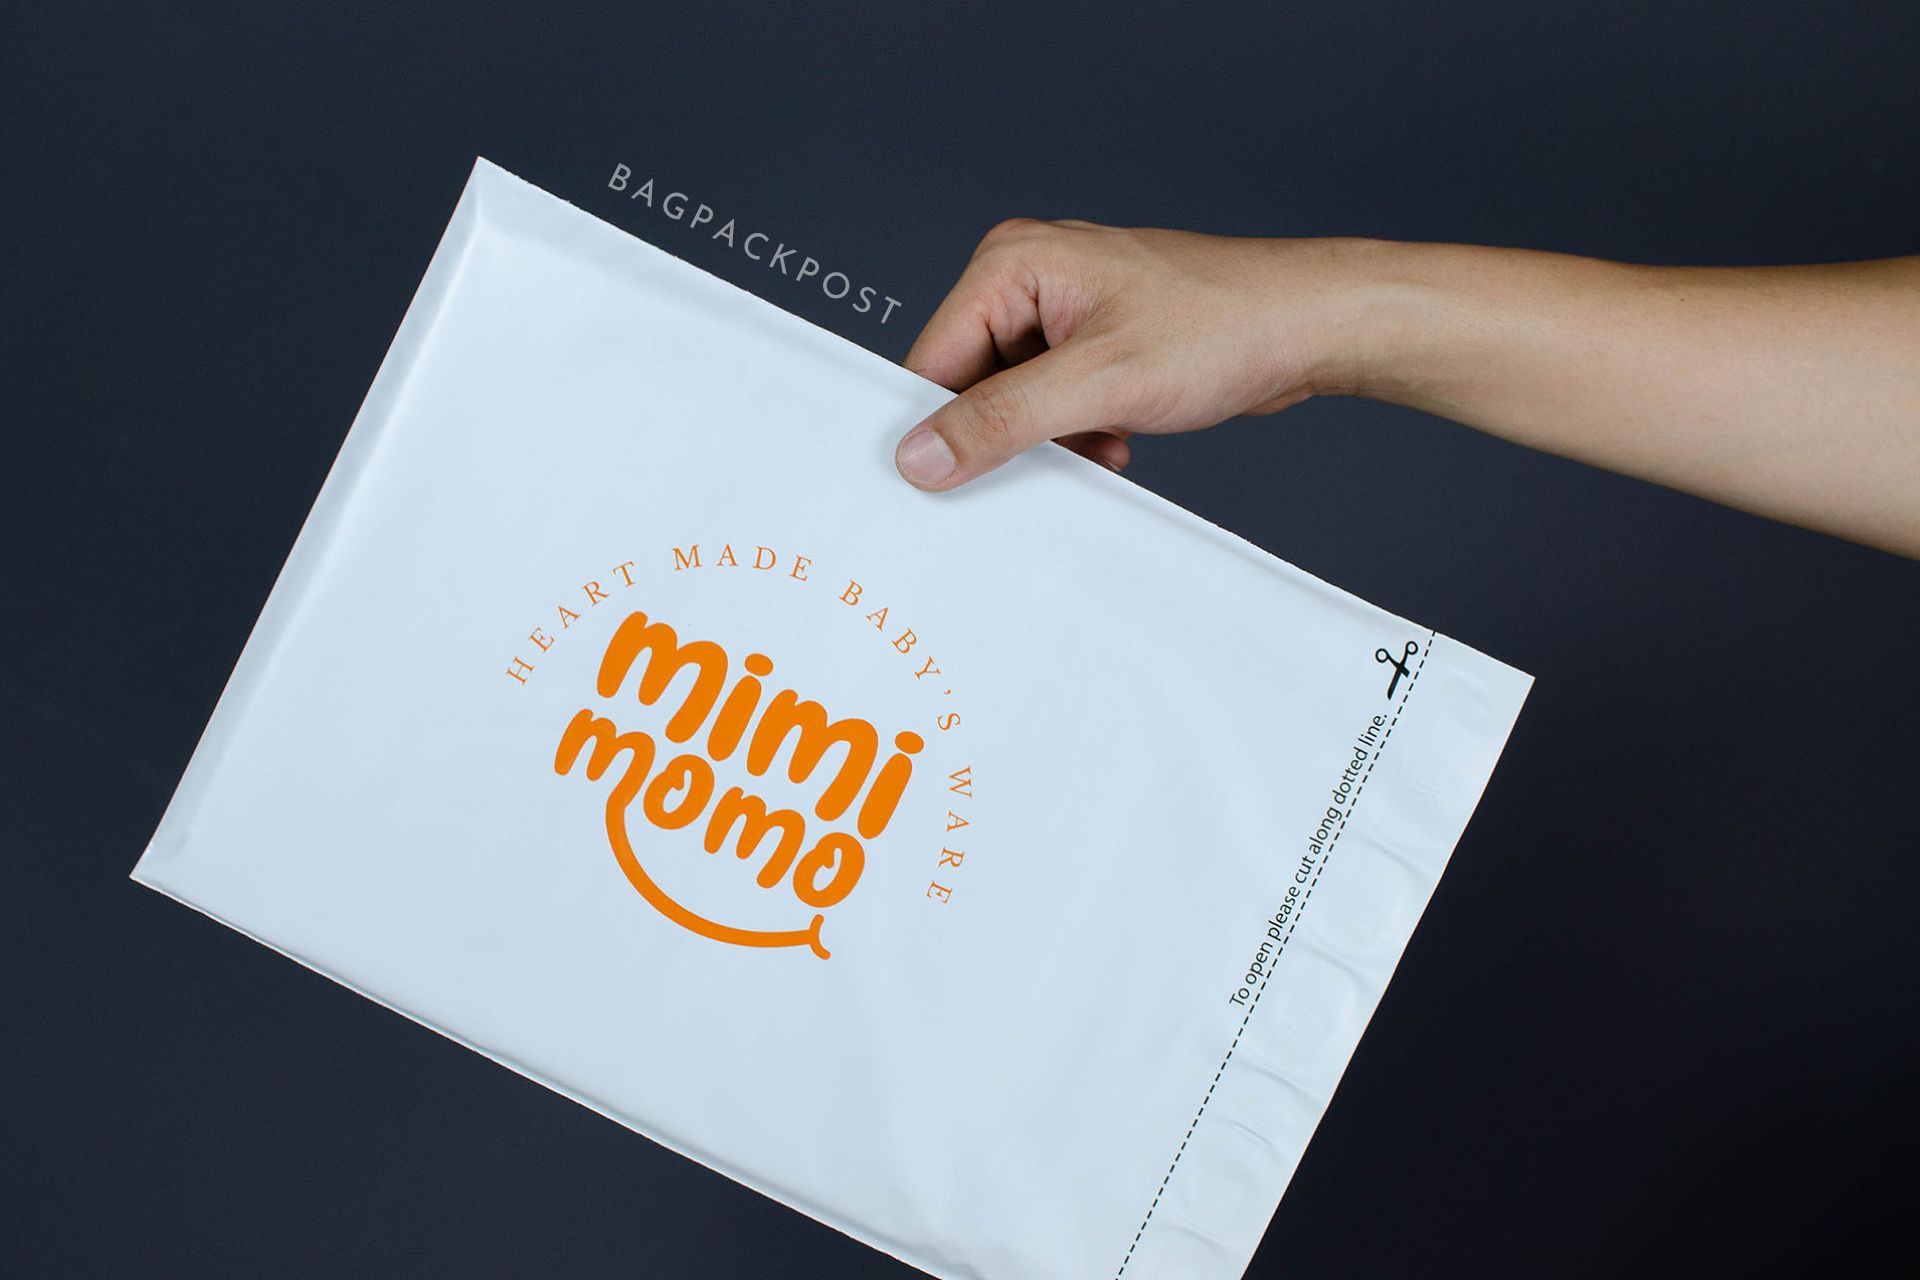 ผลิตถุงไปรษณีย์ ซองไปรษณีย์พิมพ์ลาย ถุงไปรษณีย์พิมพ์ลาย  ซองพิมพ์ลาย mimimomo| BagPackPost